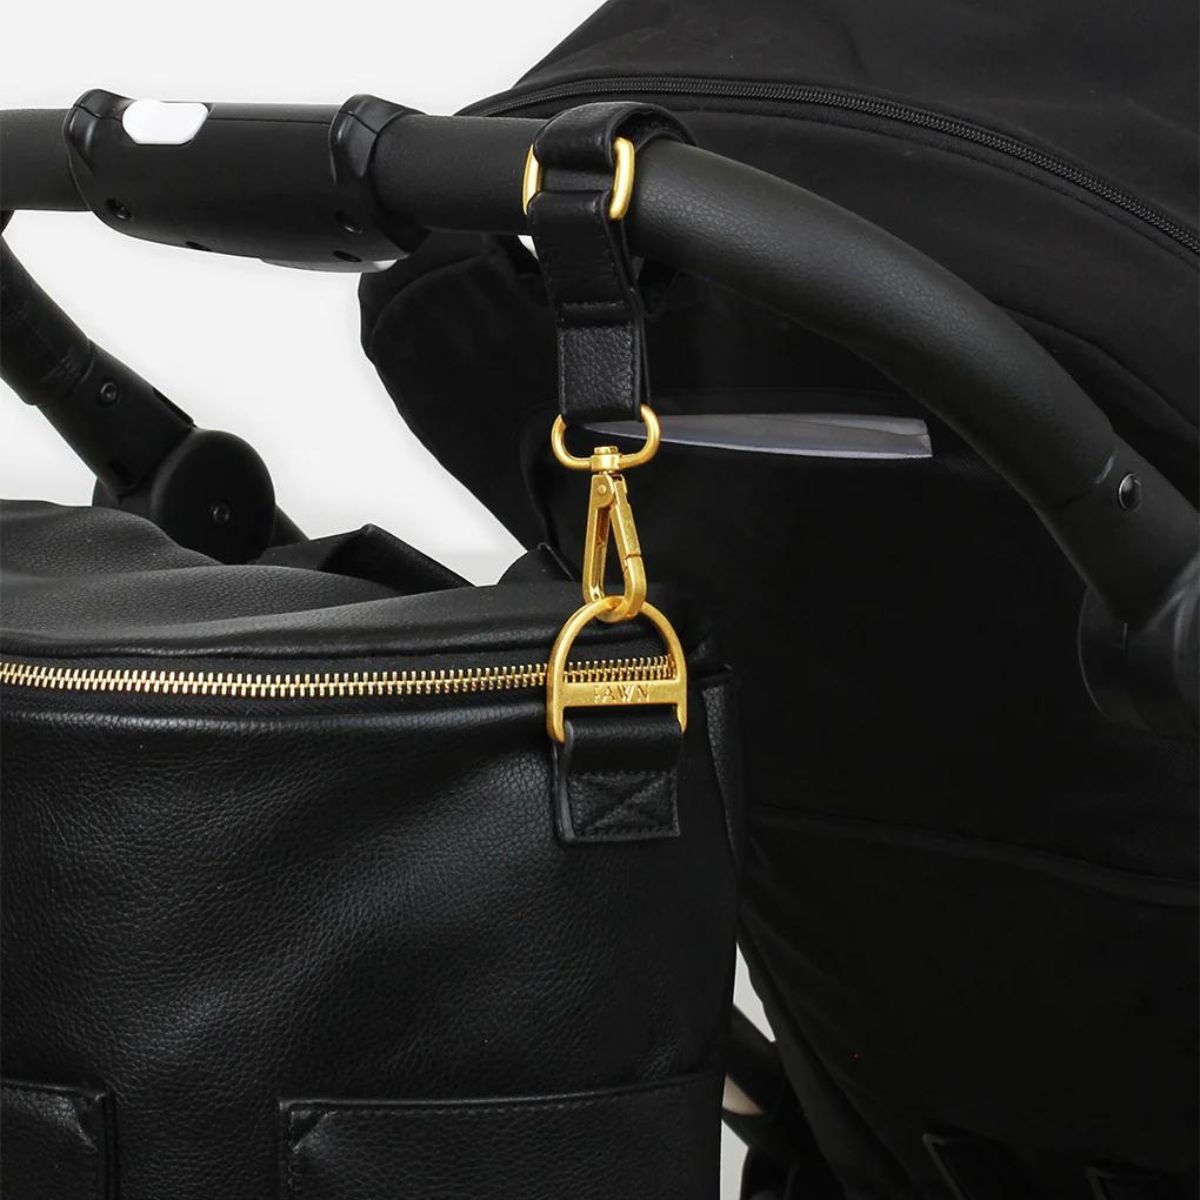 Fawn Design Stroller Hooks on stroller - Black